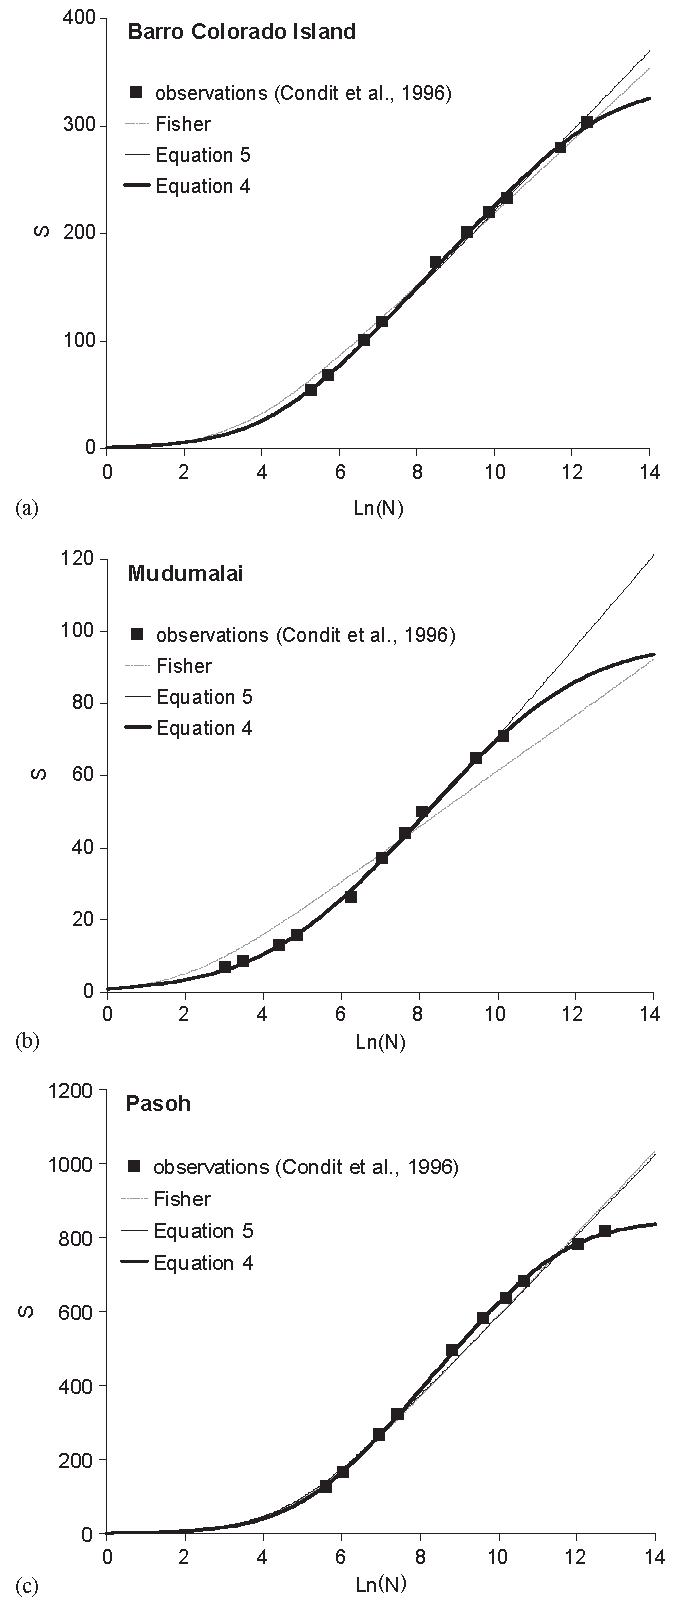 Comparaison entre le modèle de Fisher et le modèle étendu dans trois parcelles forestières connues. Les modèles sont ajustés aux données. Les courbes légendées Equation 4 correspondent au modèle de Fisher étendu par Schulte, alors que l’Equation 5 est le modèle intermédiaire, supposant le nombre total d’espèces infini.